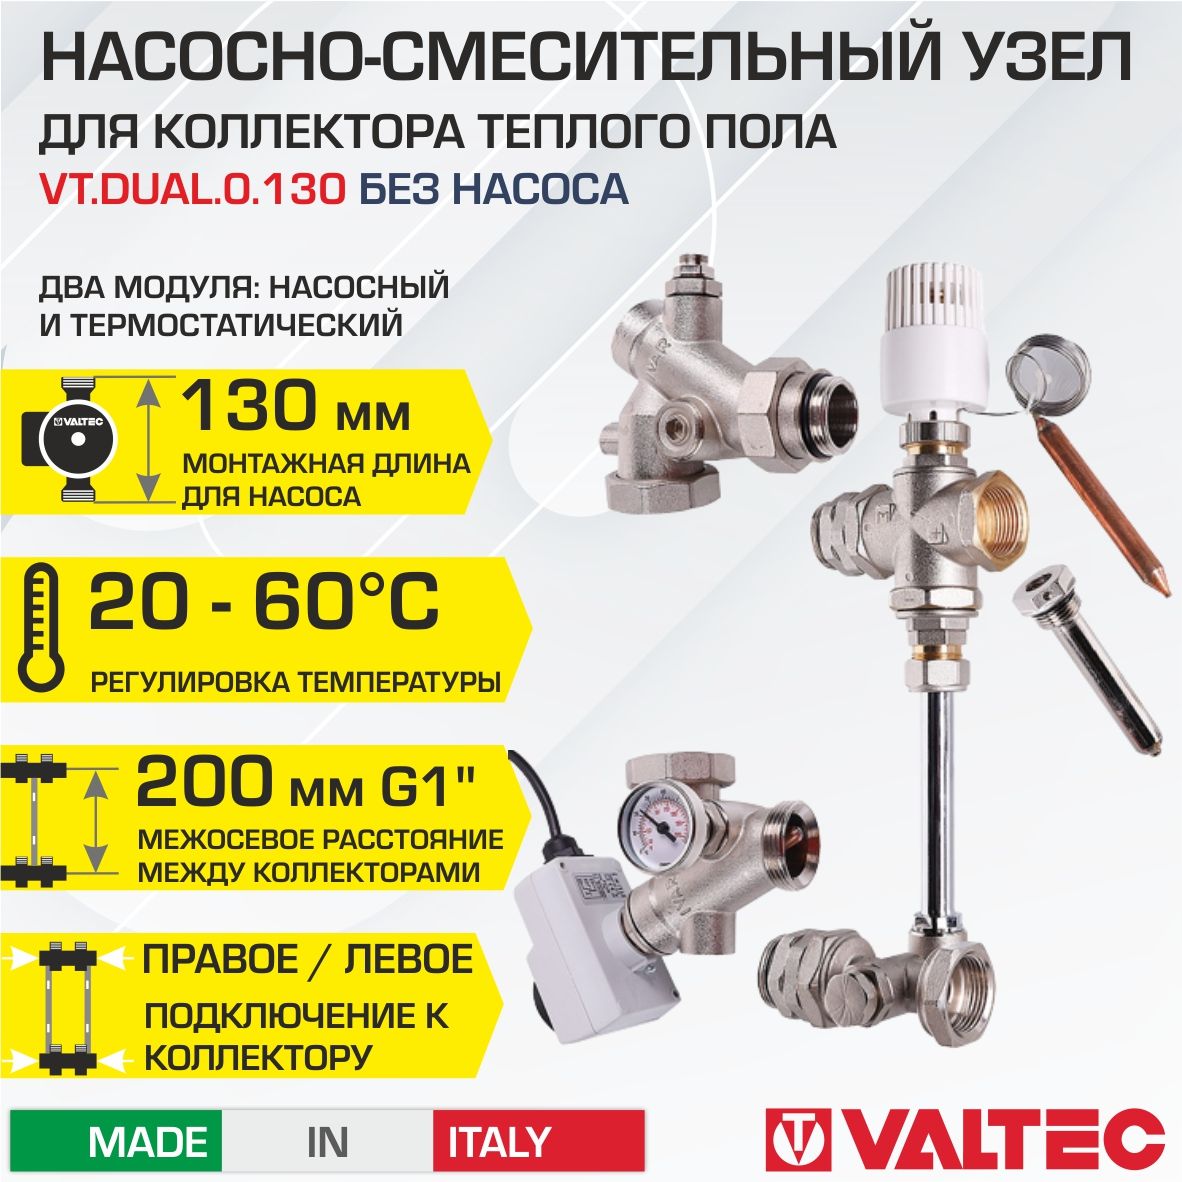 Valtec - Водяной теплый пол